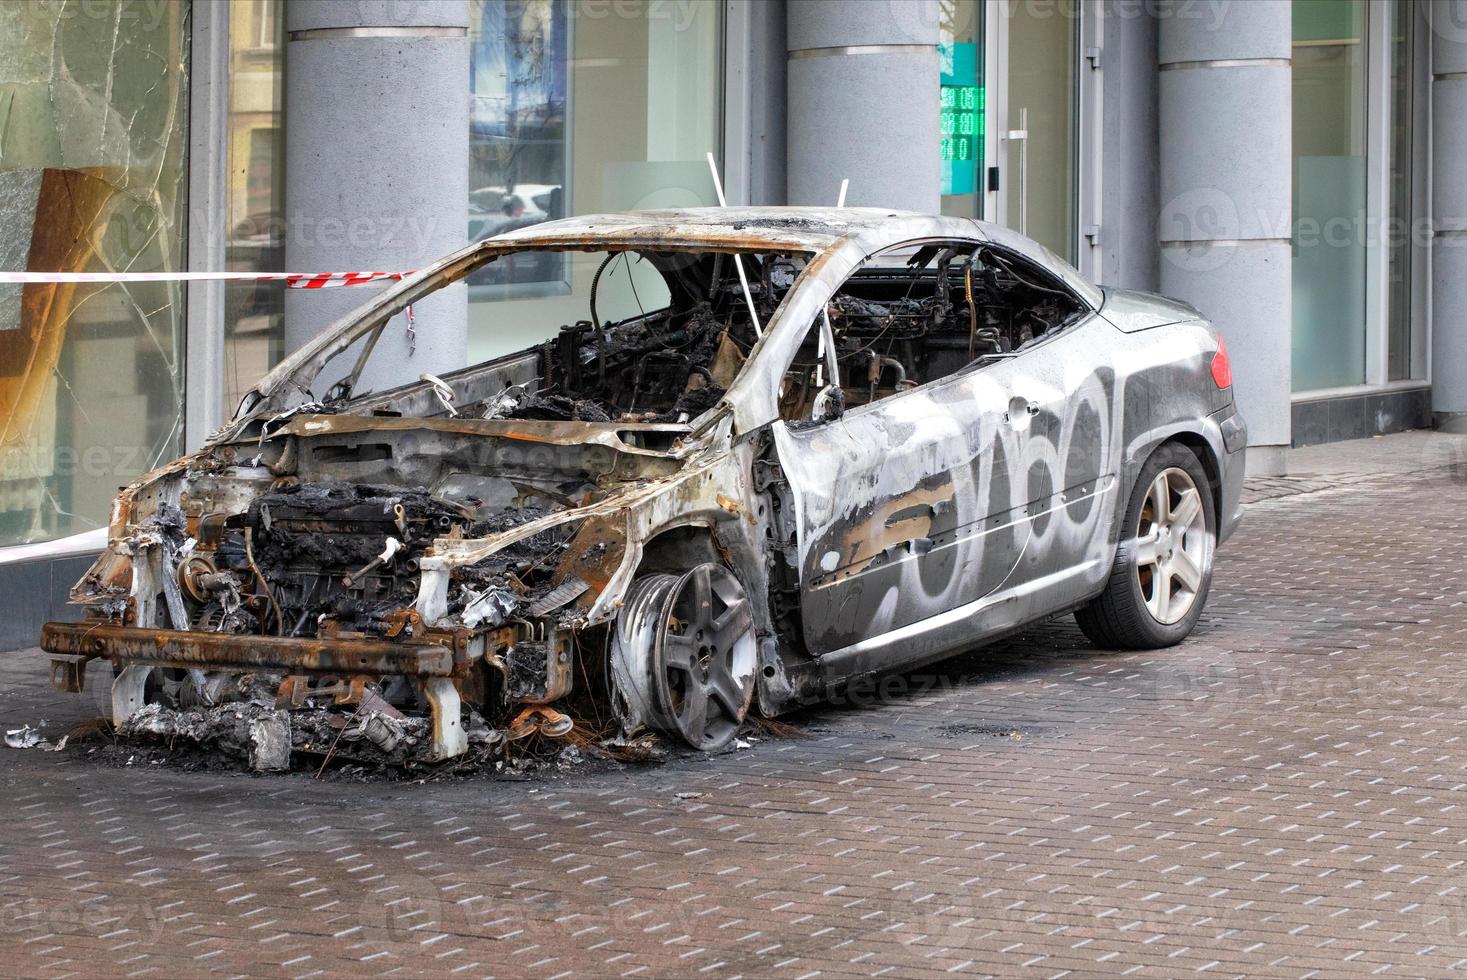 o interior do interior de um carro queimado, vista lateral. foto